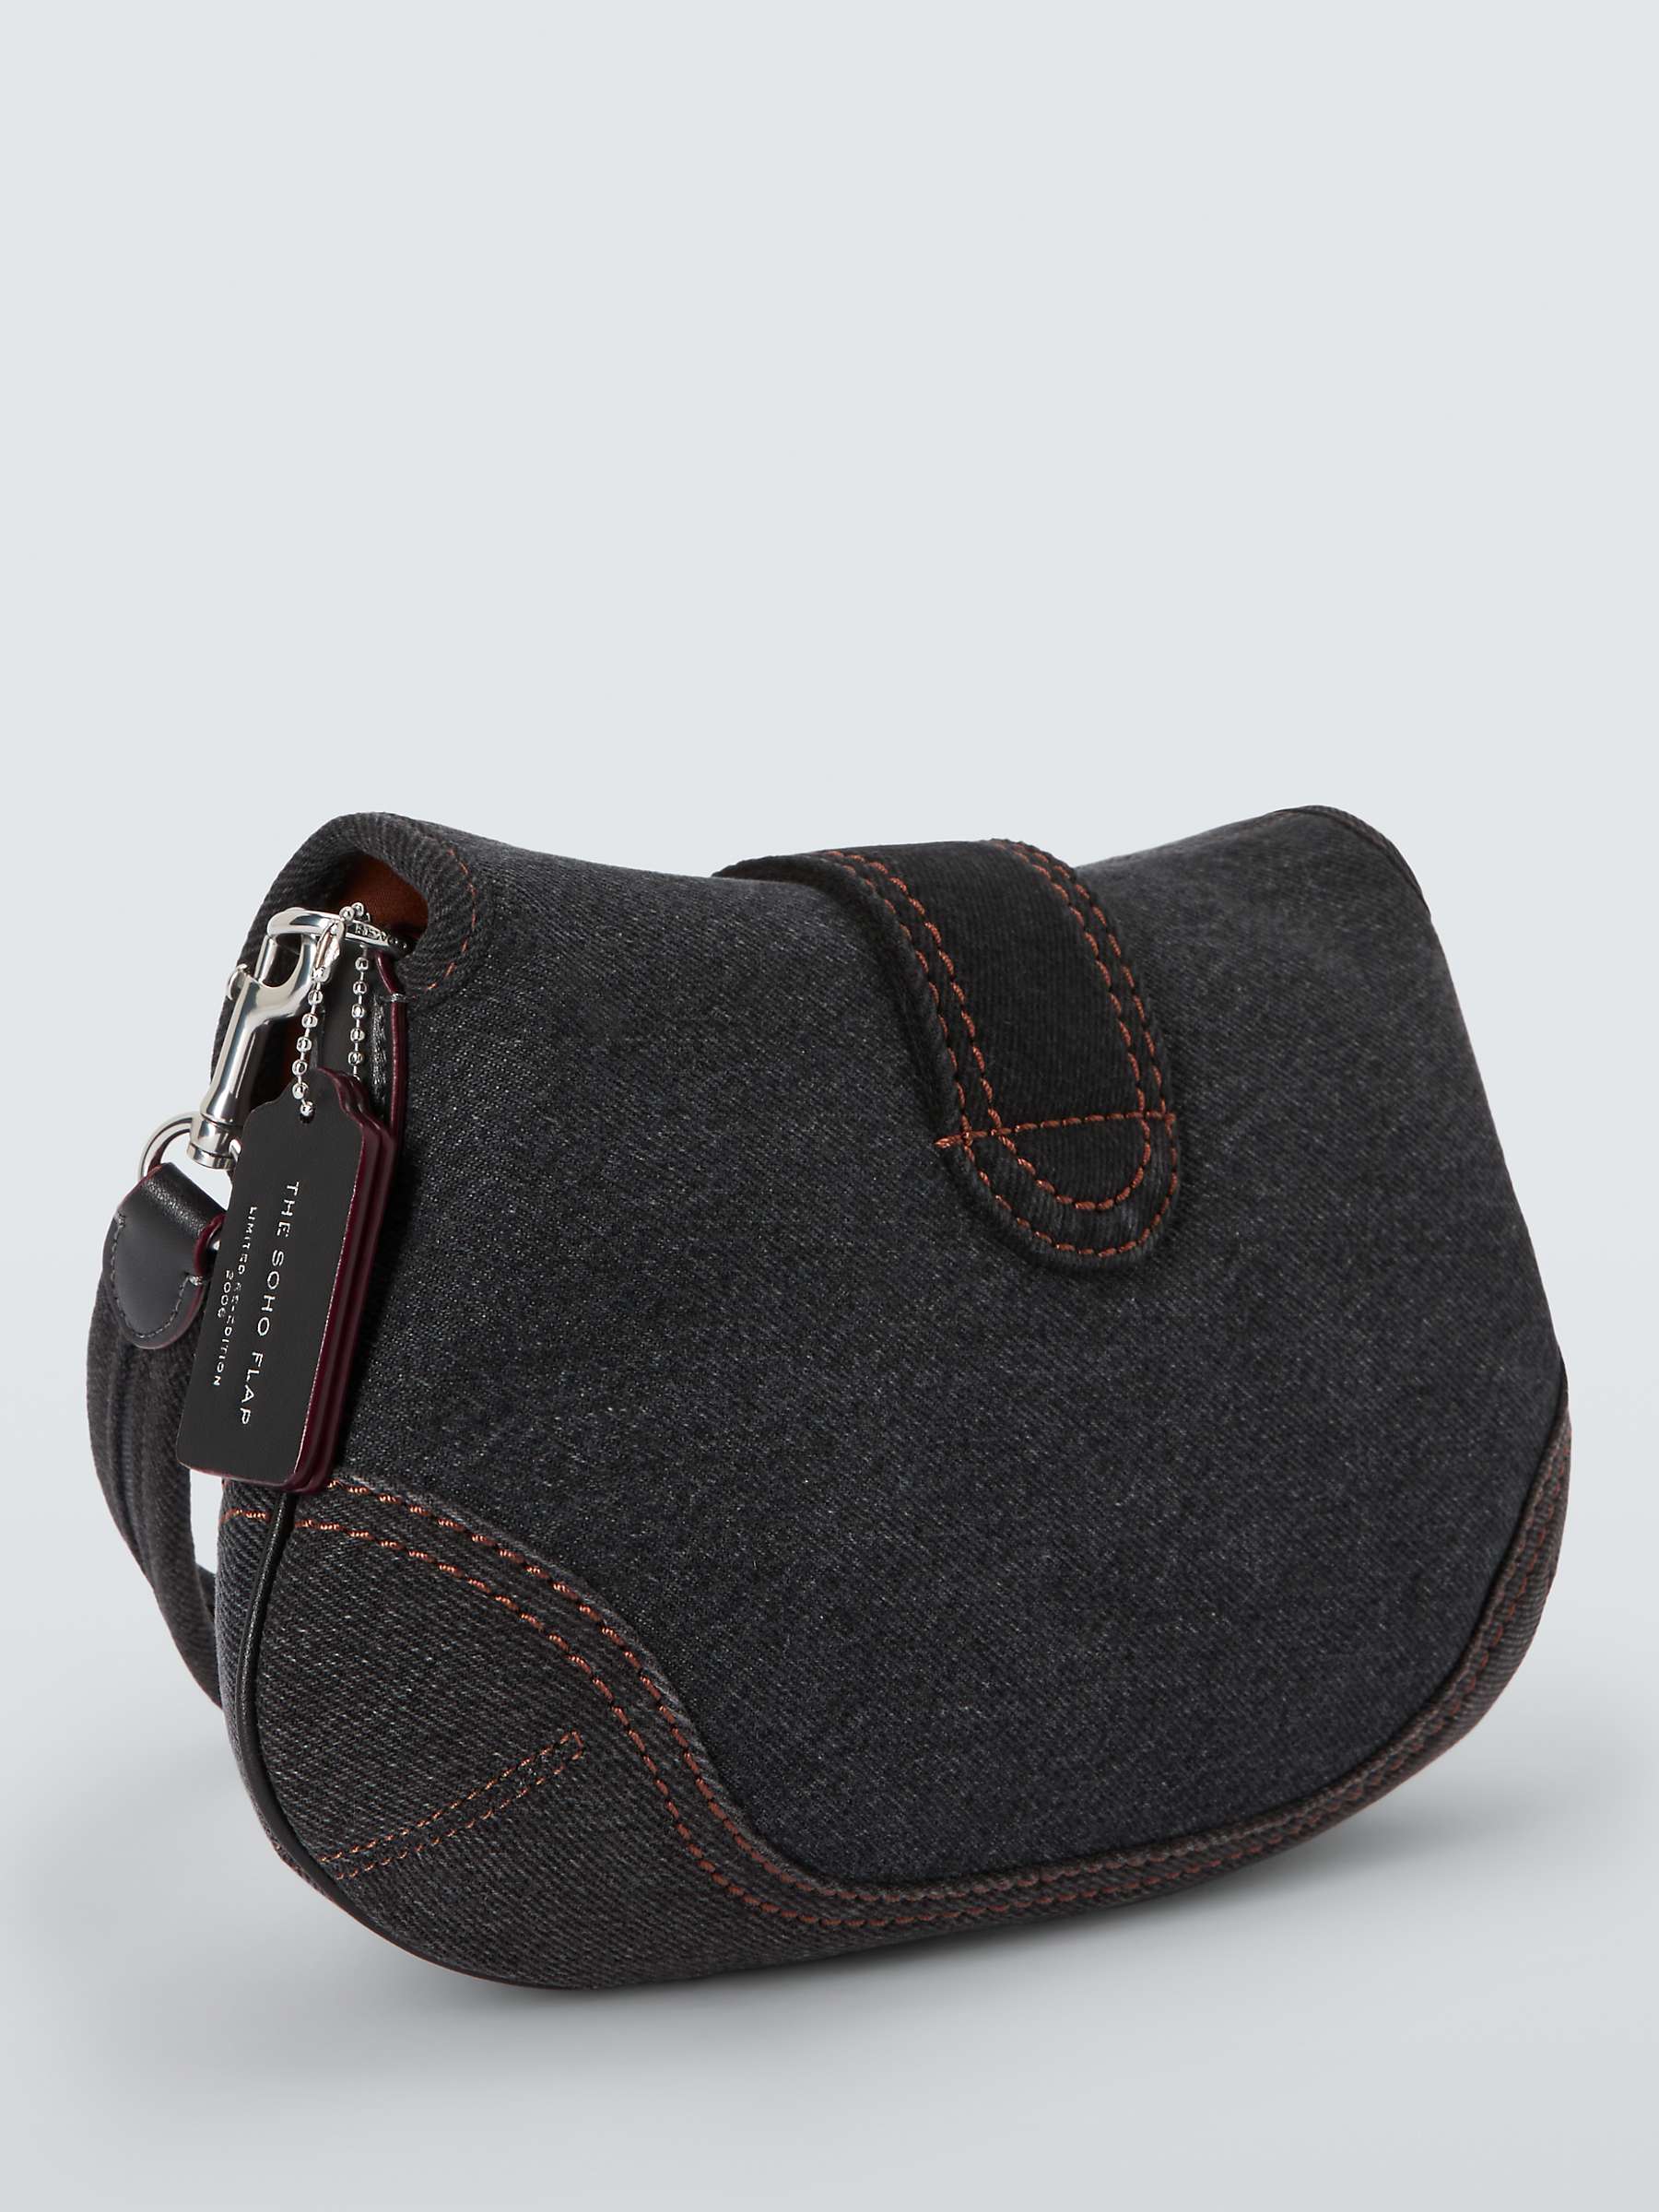 Buy Coach Soho Shoulder Bag, Black/Multi Online at johnlewis.com